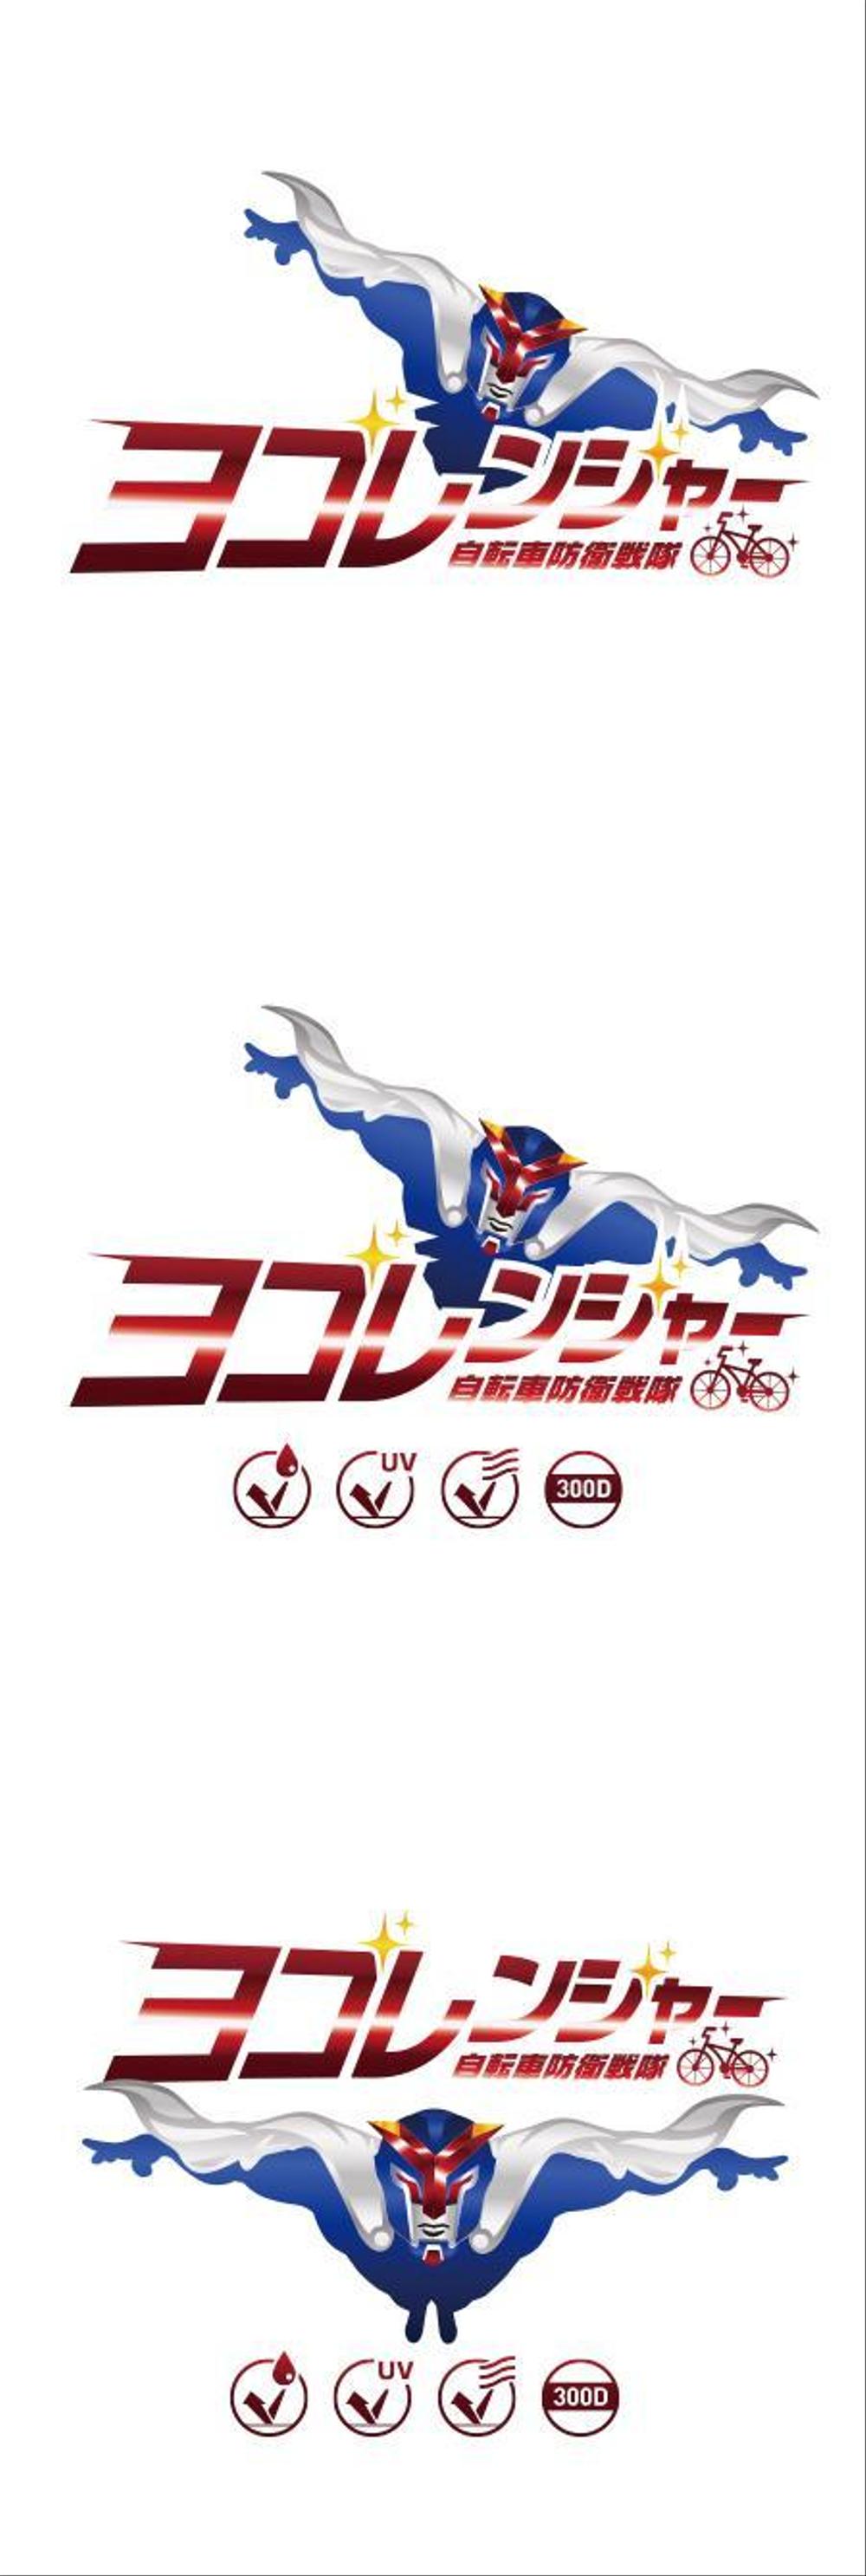 高品質自転車カバー「自転車防衛戦隊 ヨゴレンジャー」のロゴ制作